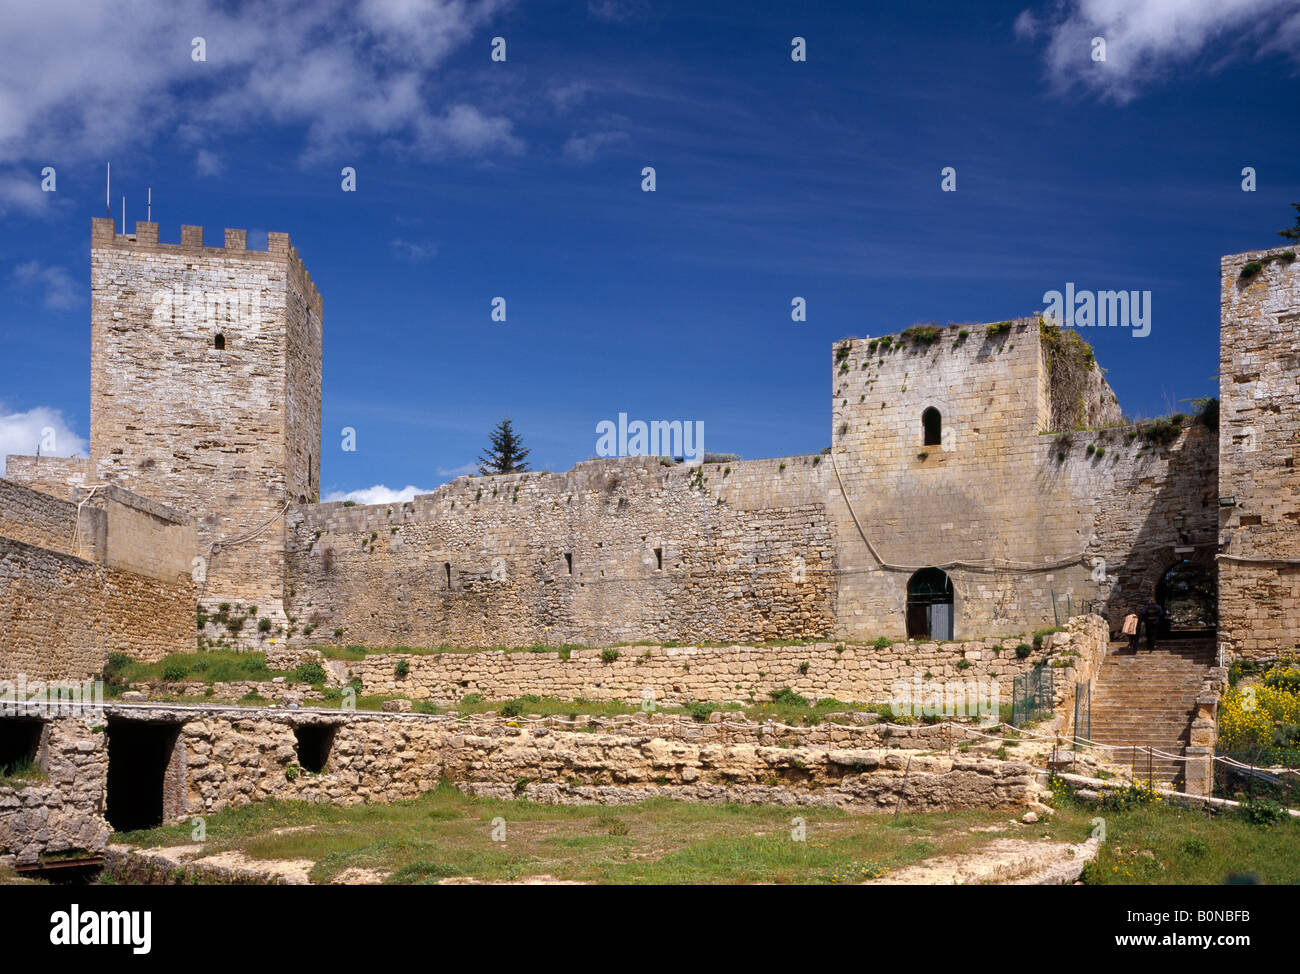 Lombardia Castle Enna Sicily Italy EU. Stock Photo